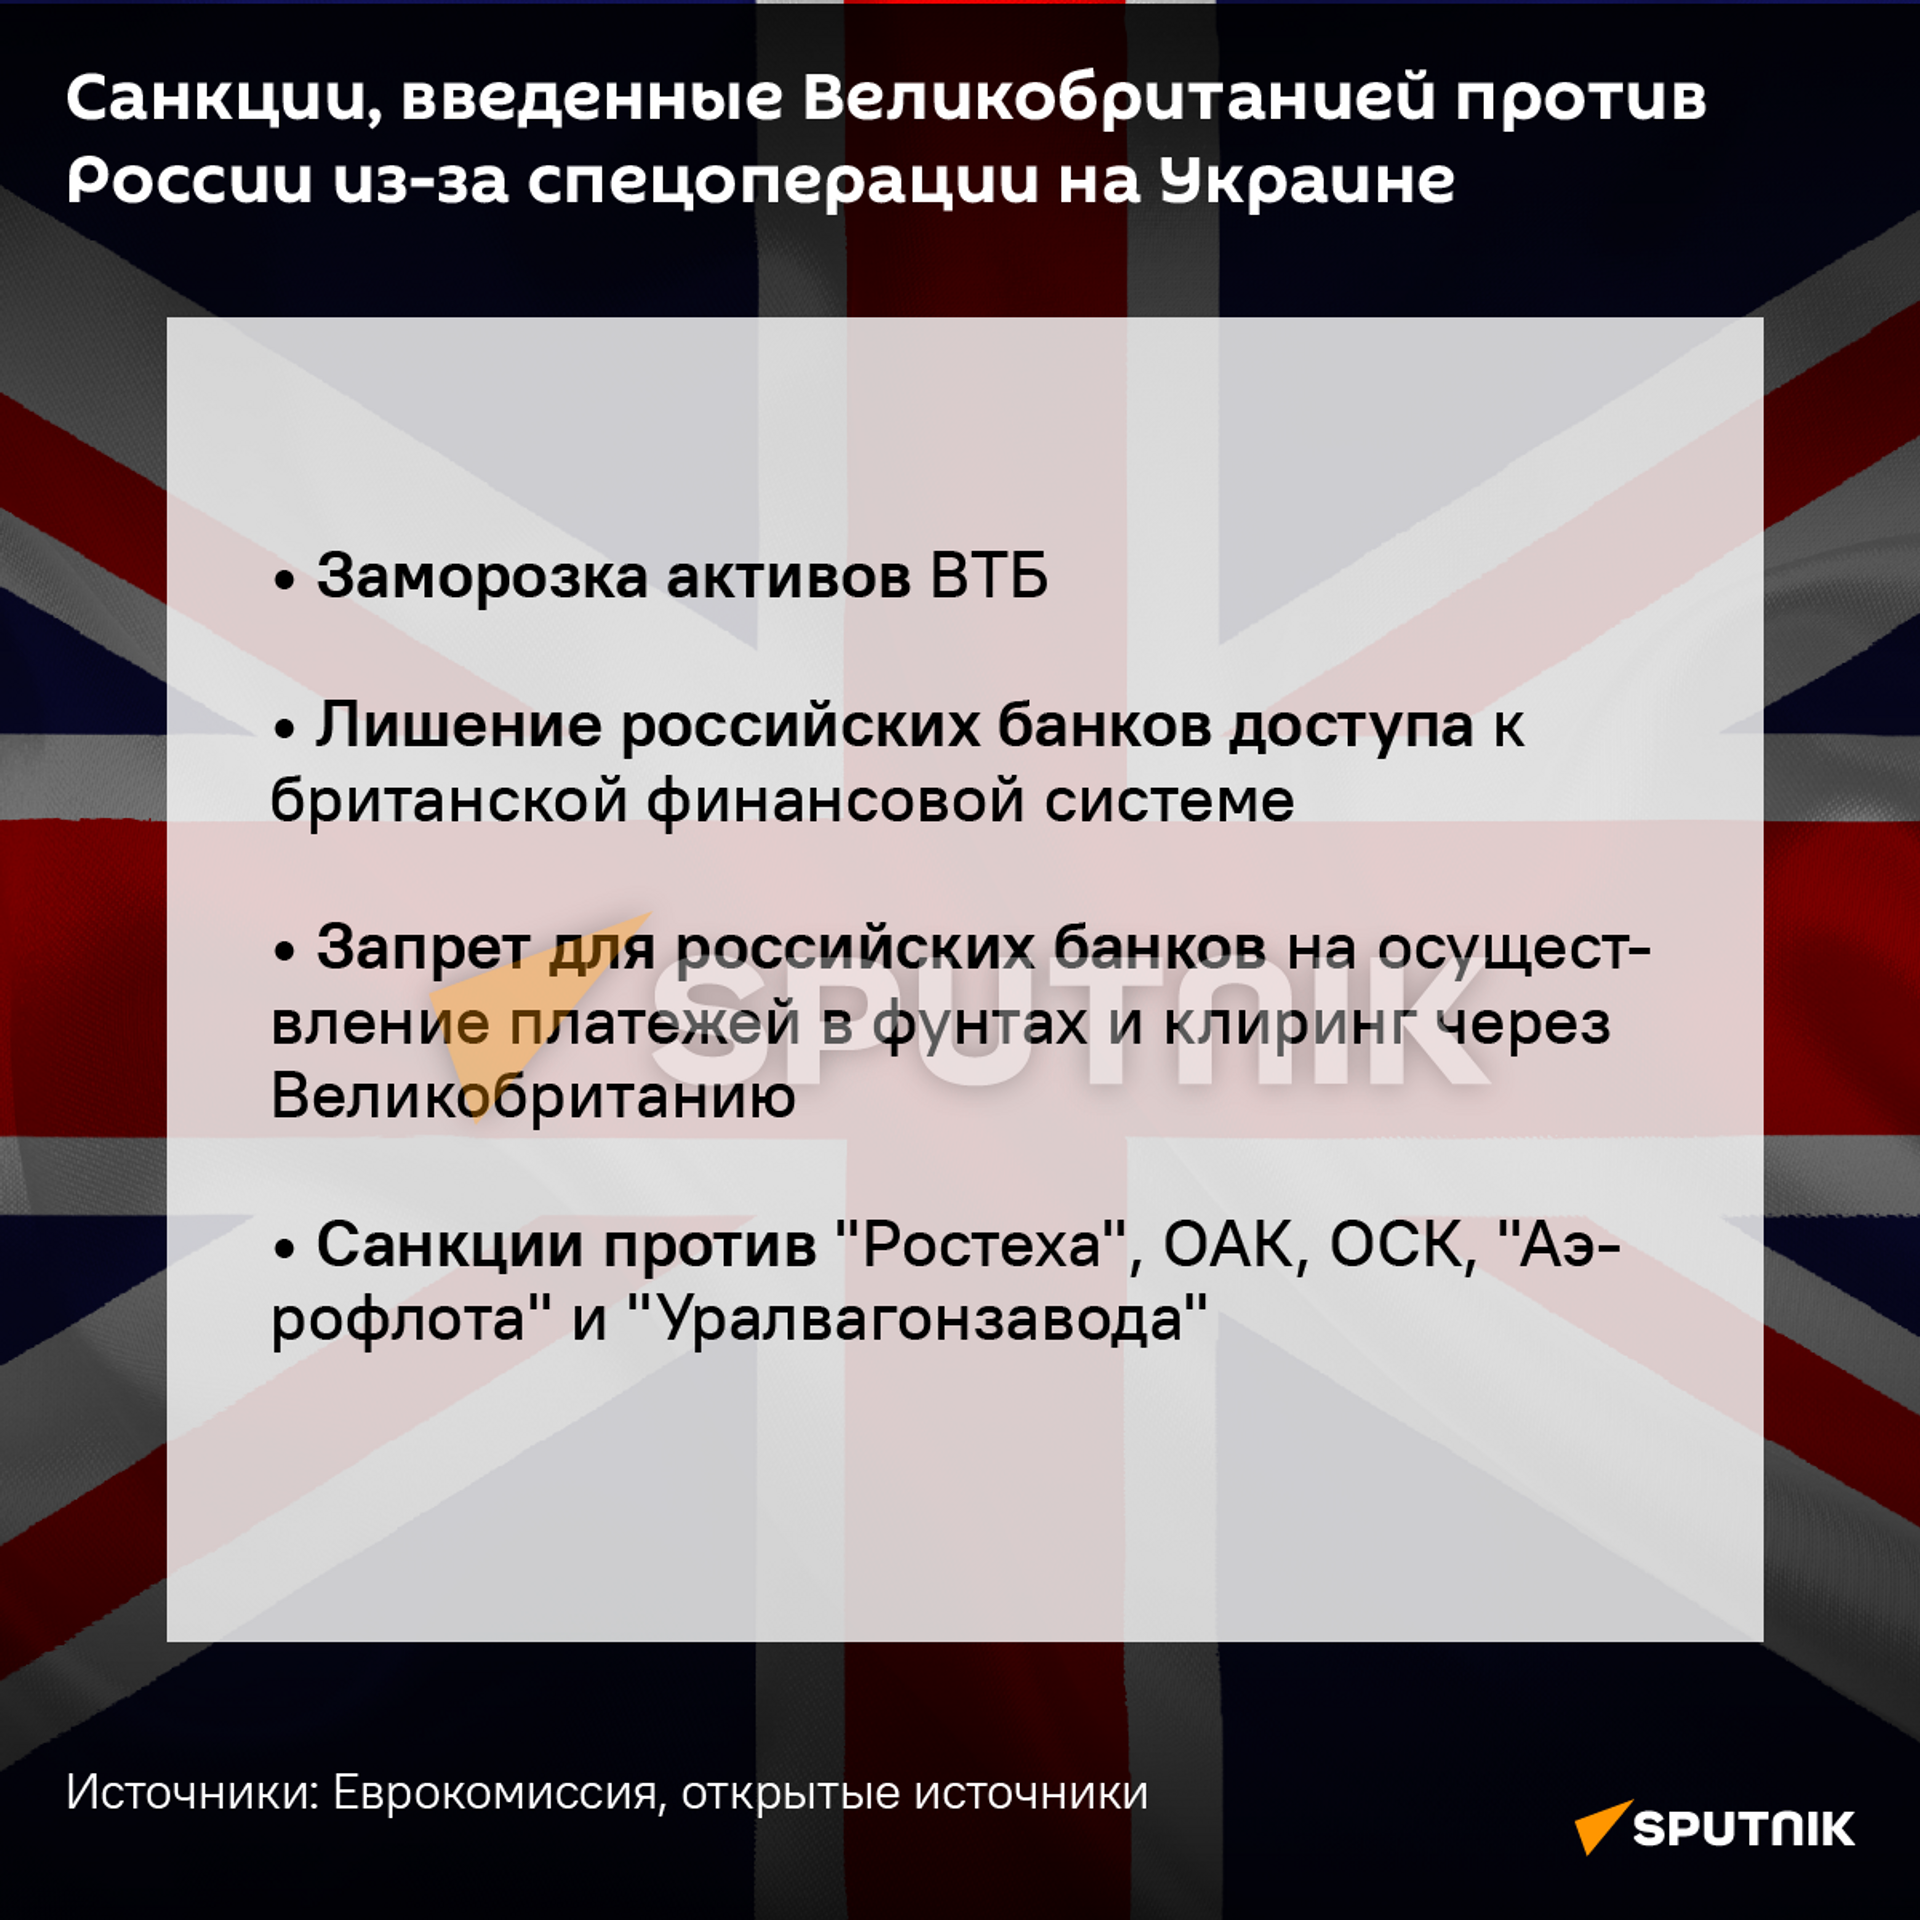 Санкции против Великобритании  - Sputnik Абхазия, 1920, 26.02.2022